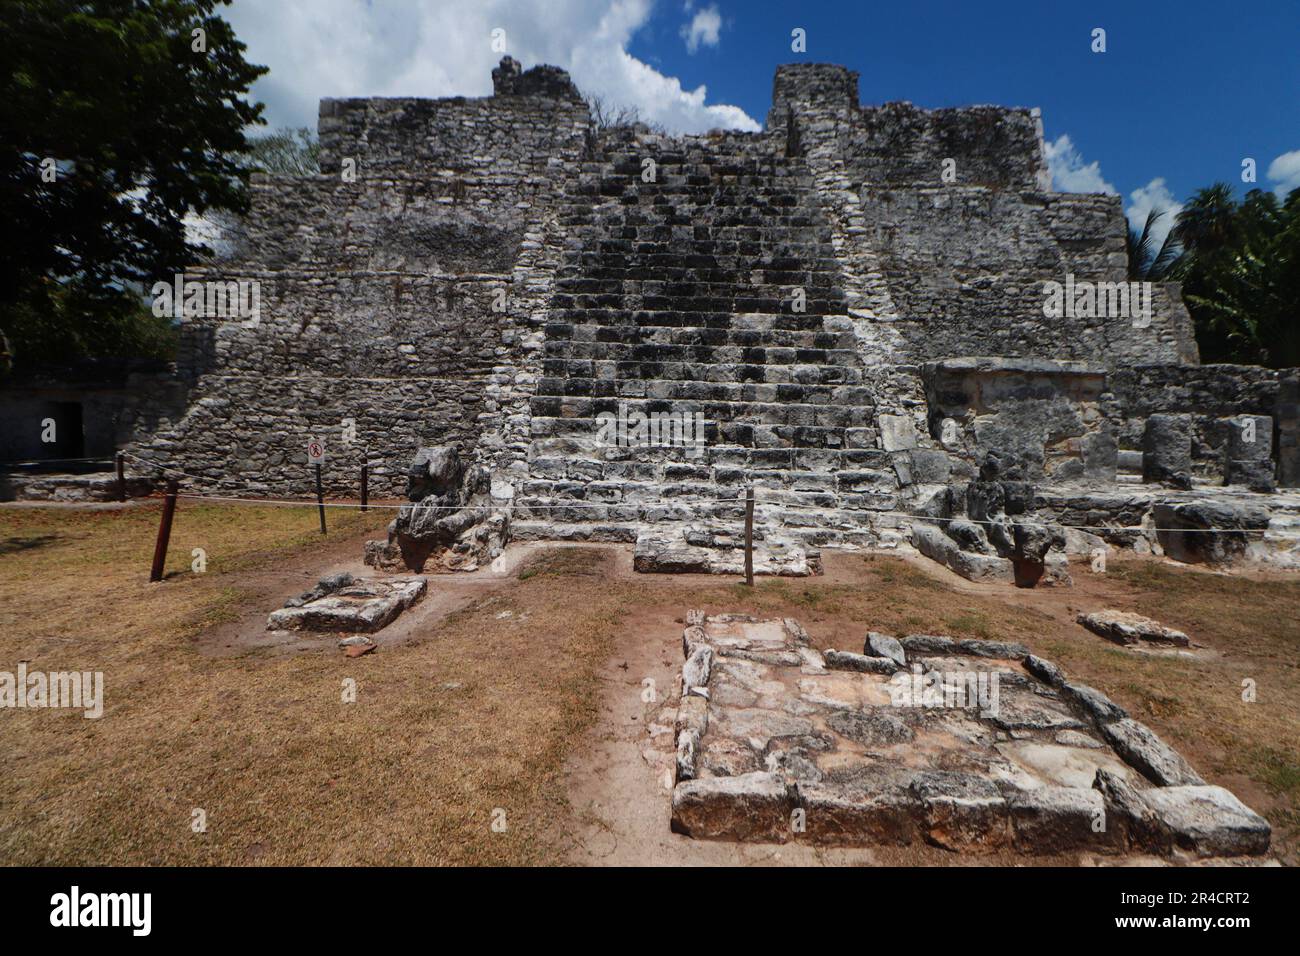 25 de mayo de 2023 en Cancún, Quintana Roo:  Zona Arqueológica “El Meco”, es un yacimiento arqueológico de la cultura maya precolombina, localizado en el sureste de México, en el territorio que hoy ocupa el estado de Quintana Roo, unos ocho kilómetros al norte del centro de Cancún. El 25 de mayo de 2023 en Cancún, Quintana Roo, México. (Foto por Carlos Santiago/ Grupo Eyepix) / Eyepix Group Stock Photo